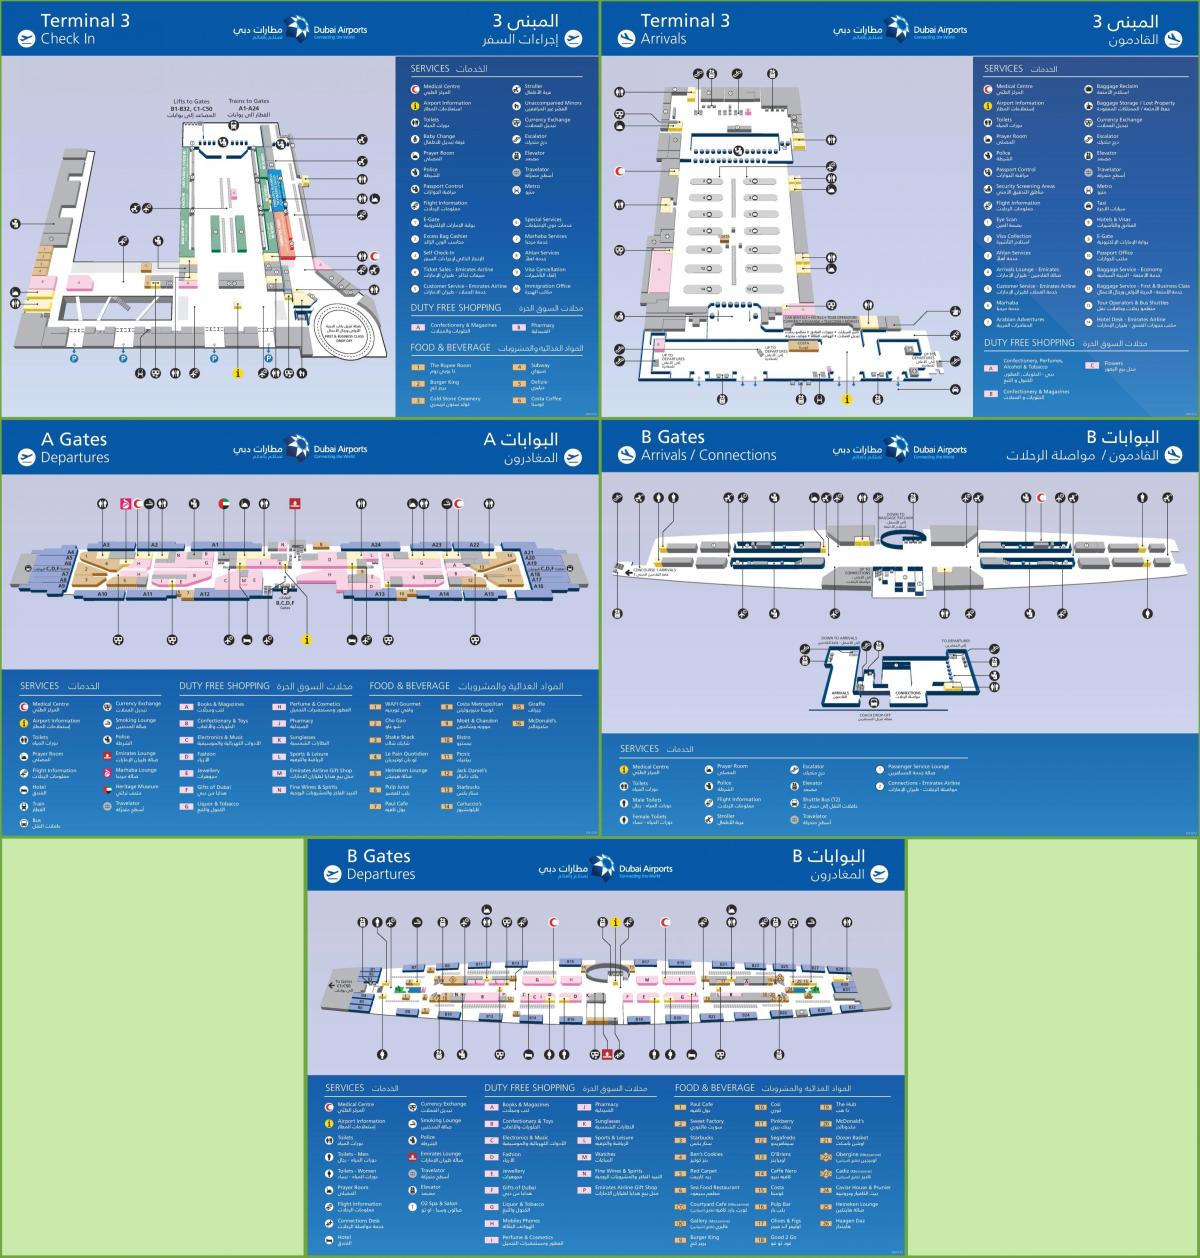 Dubajaus tarptautinis oro uostas, terminalo 3 žemėlapis